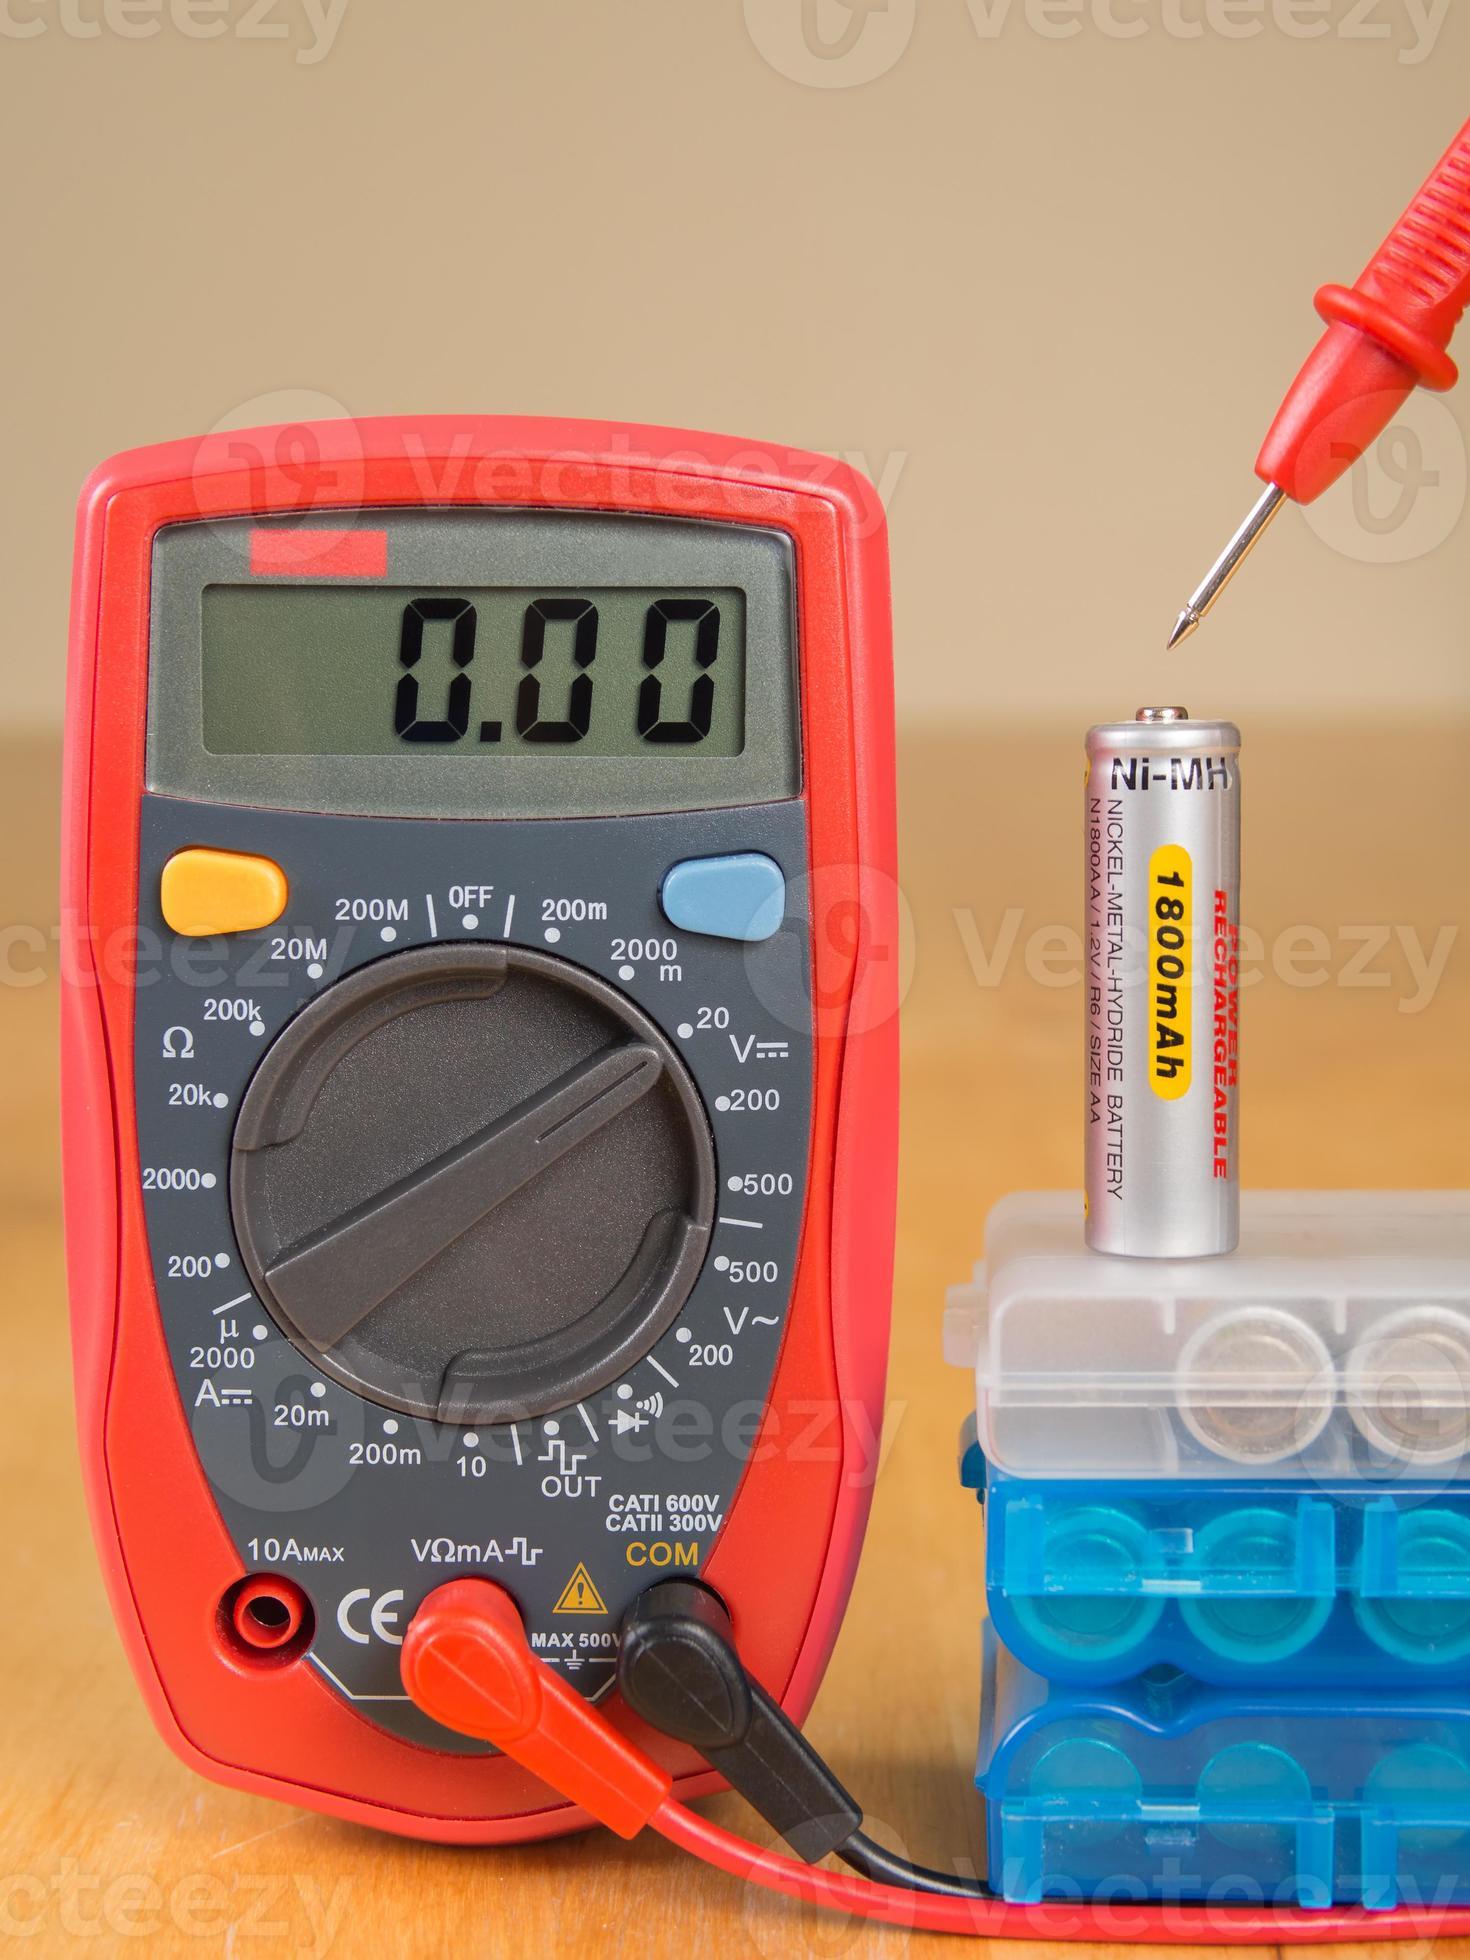 operatie nauwkeurig slijm batterijspanning meten met multimeter 991394 Stockfoto